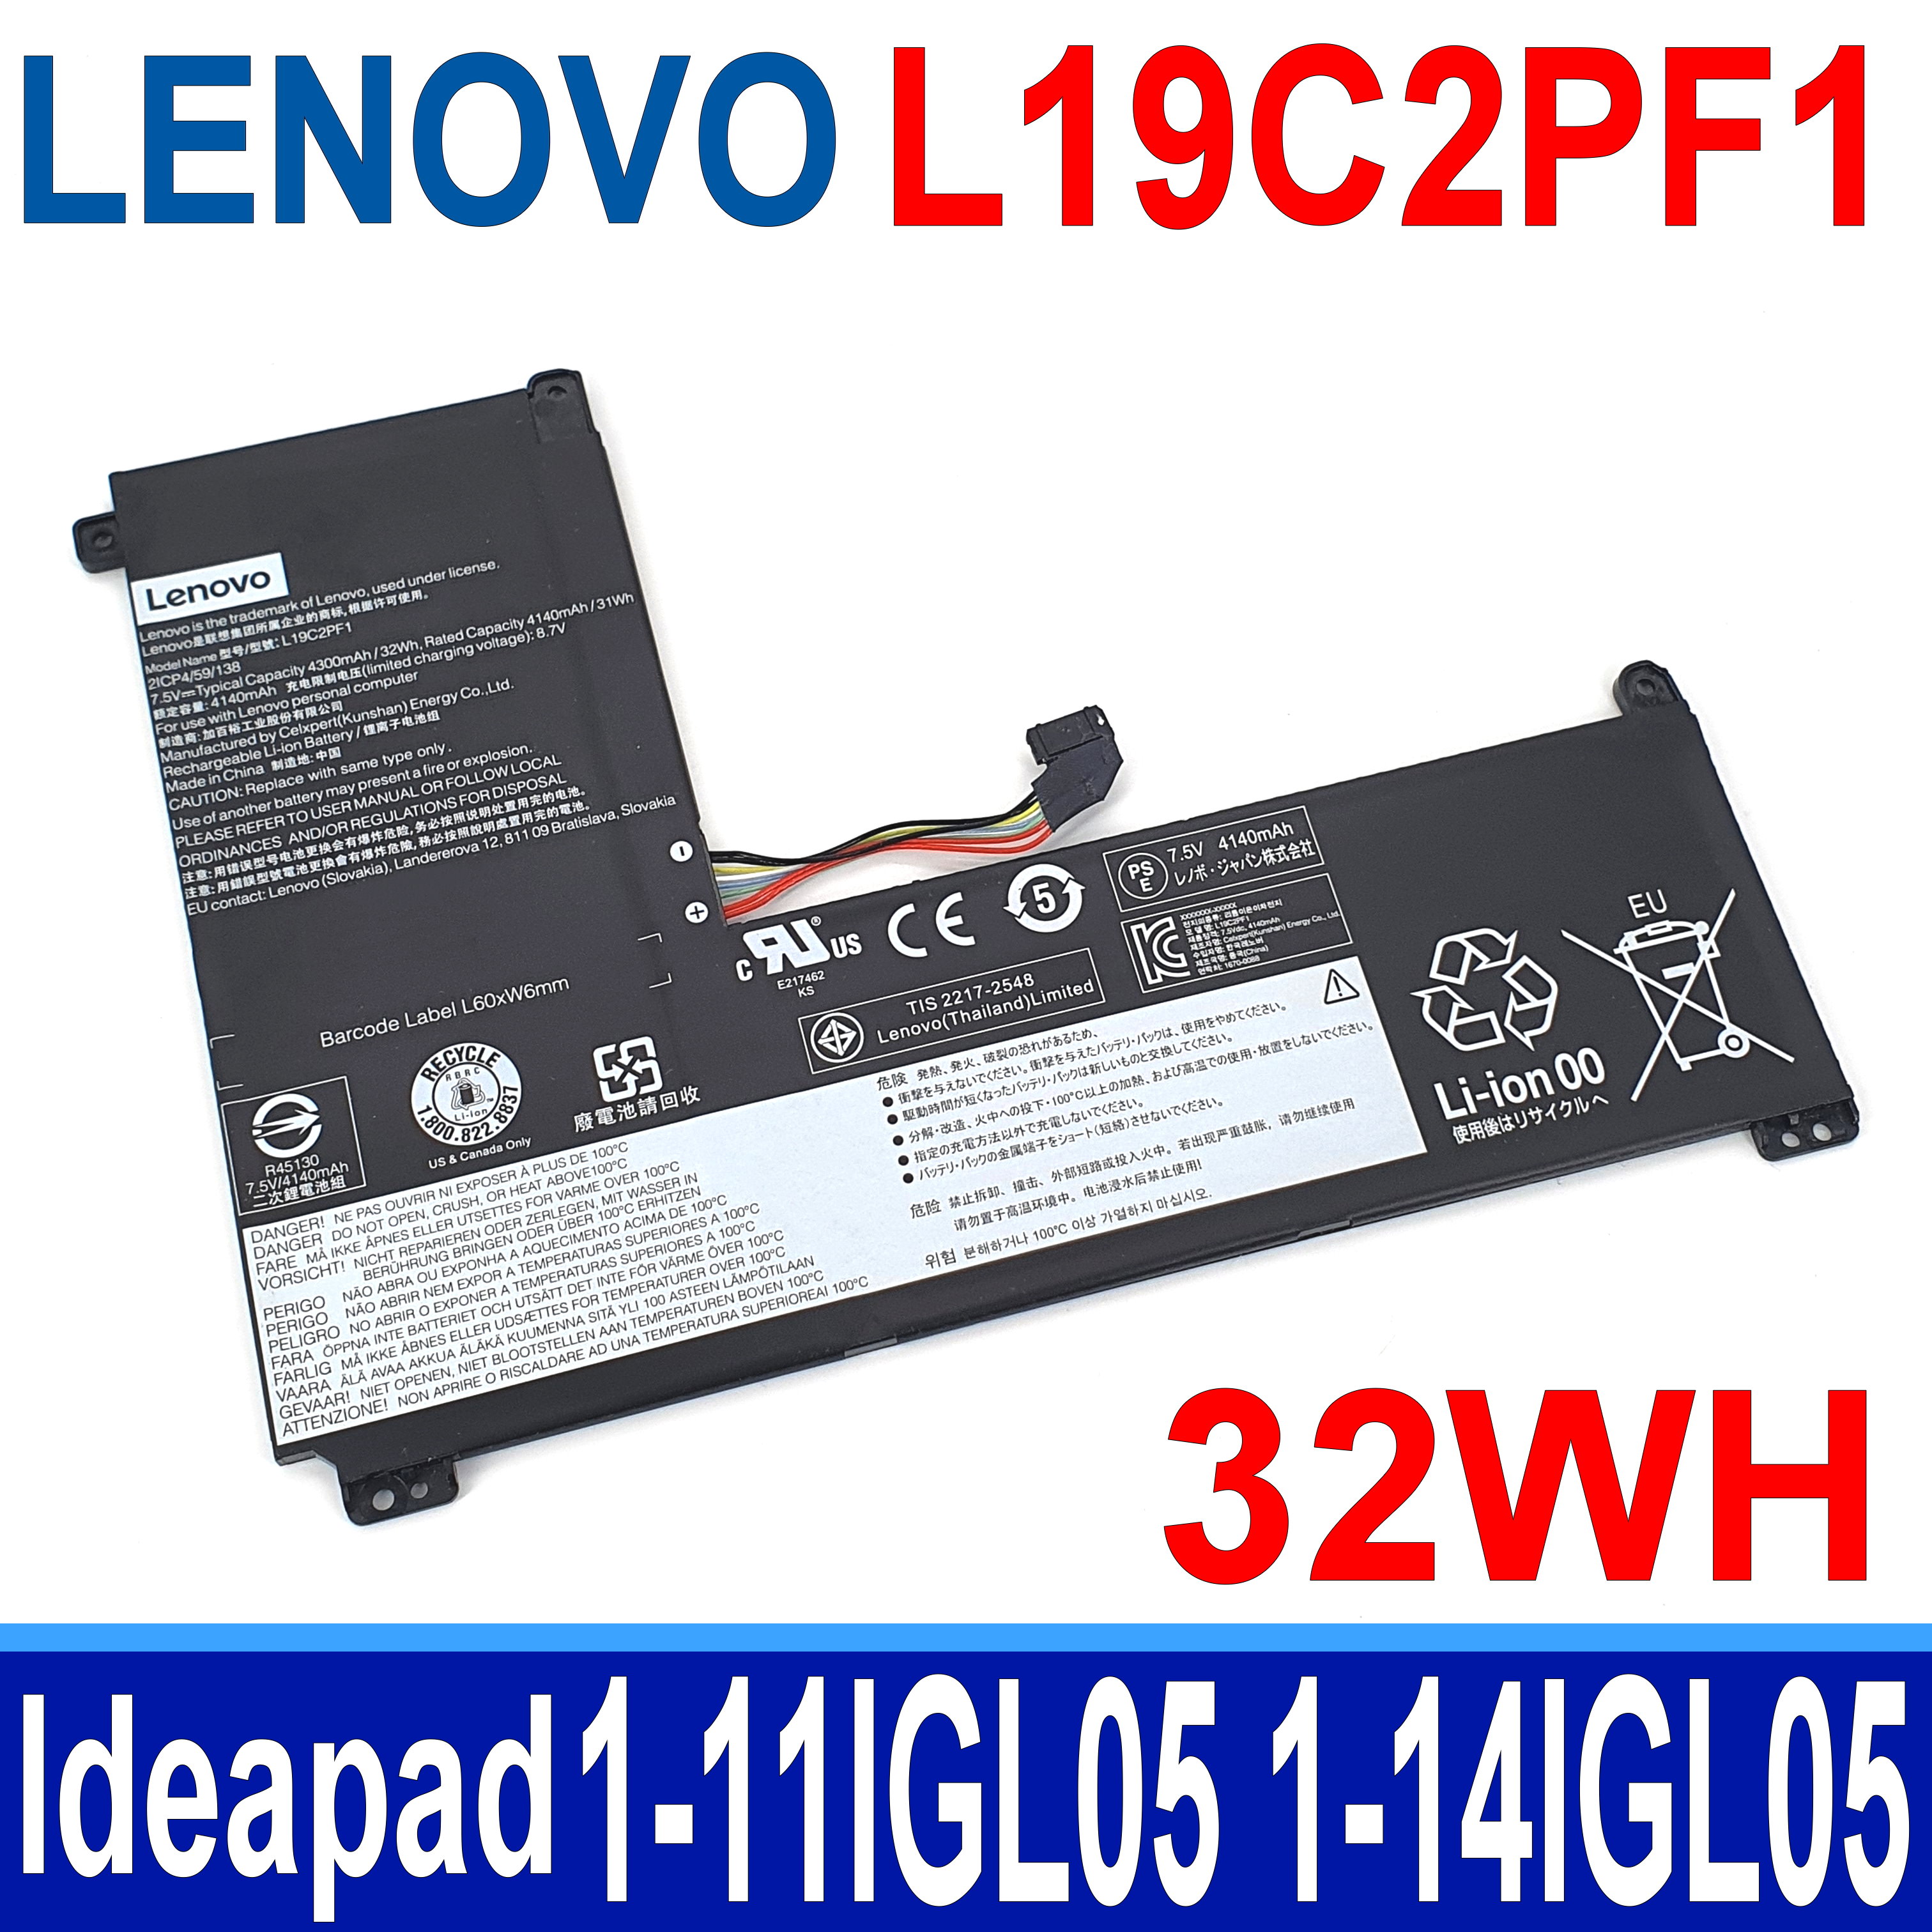 LENOVO L19C2PF1 原廠電池 L19L2PF1 L19M2PF1 Ideapad 1-11IGL05 1-14IGL05